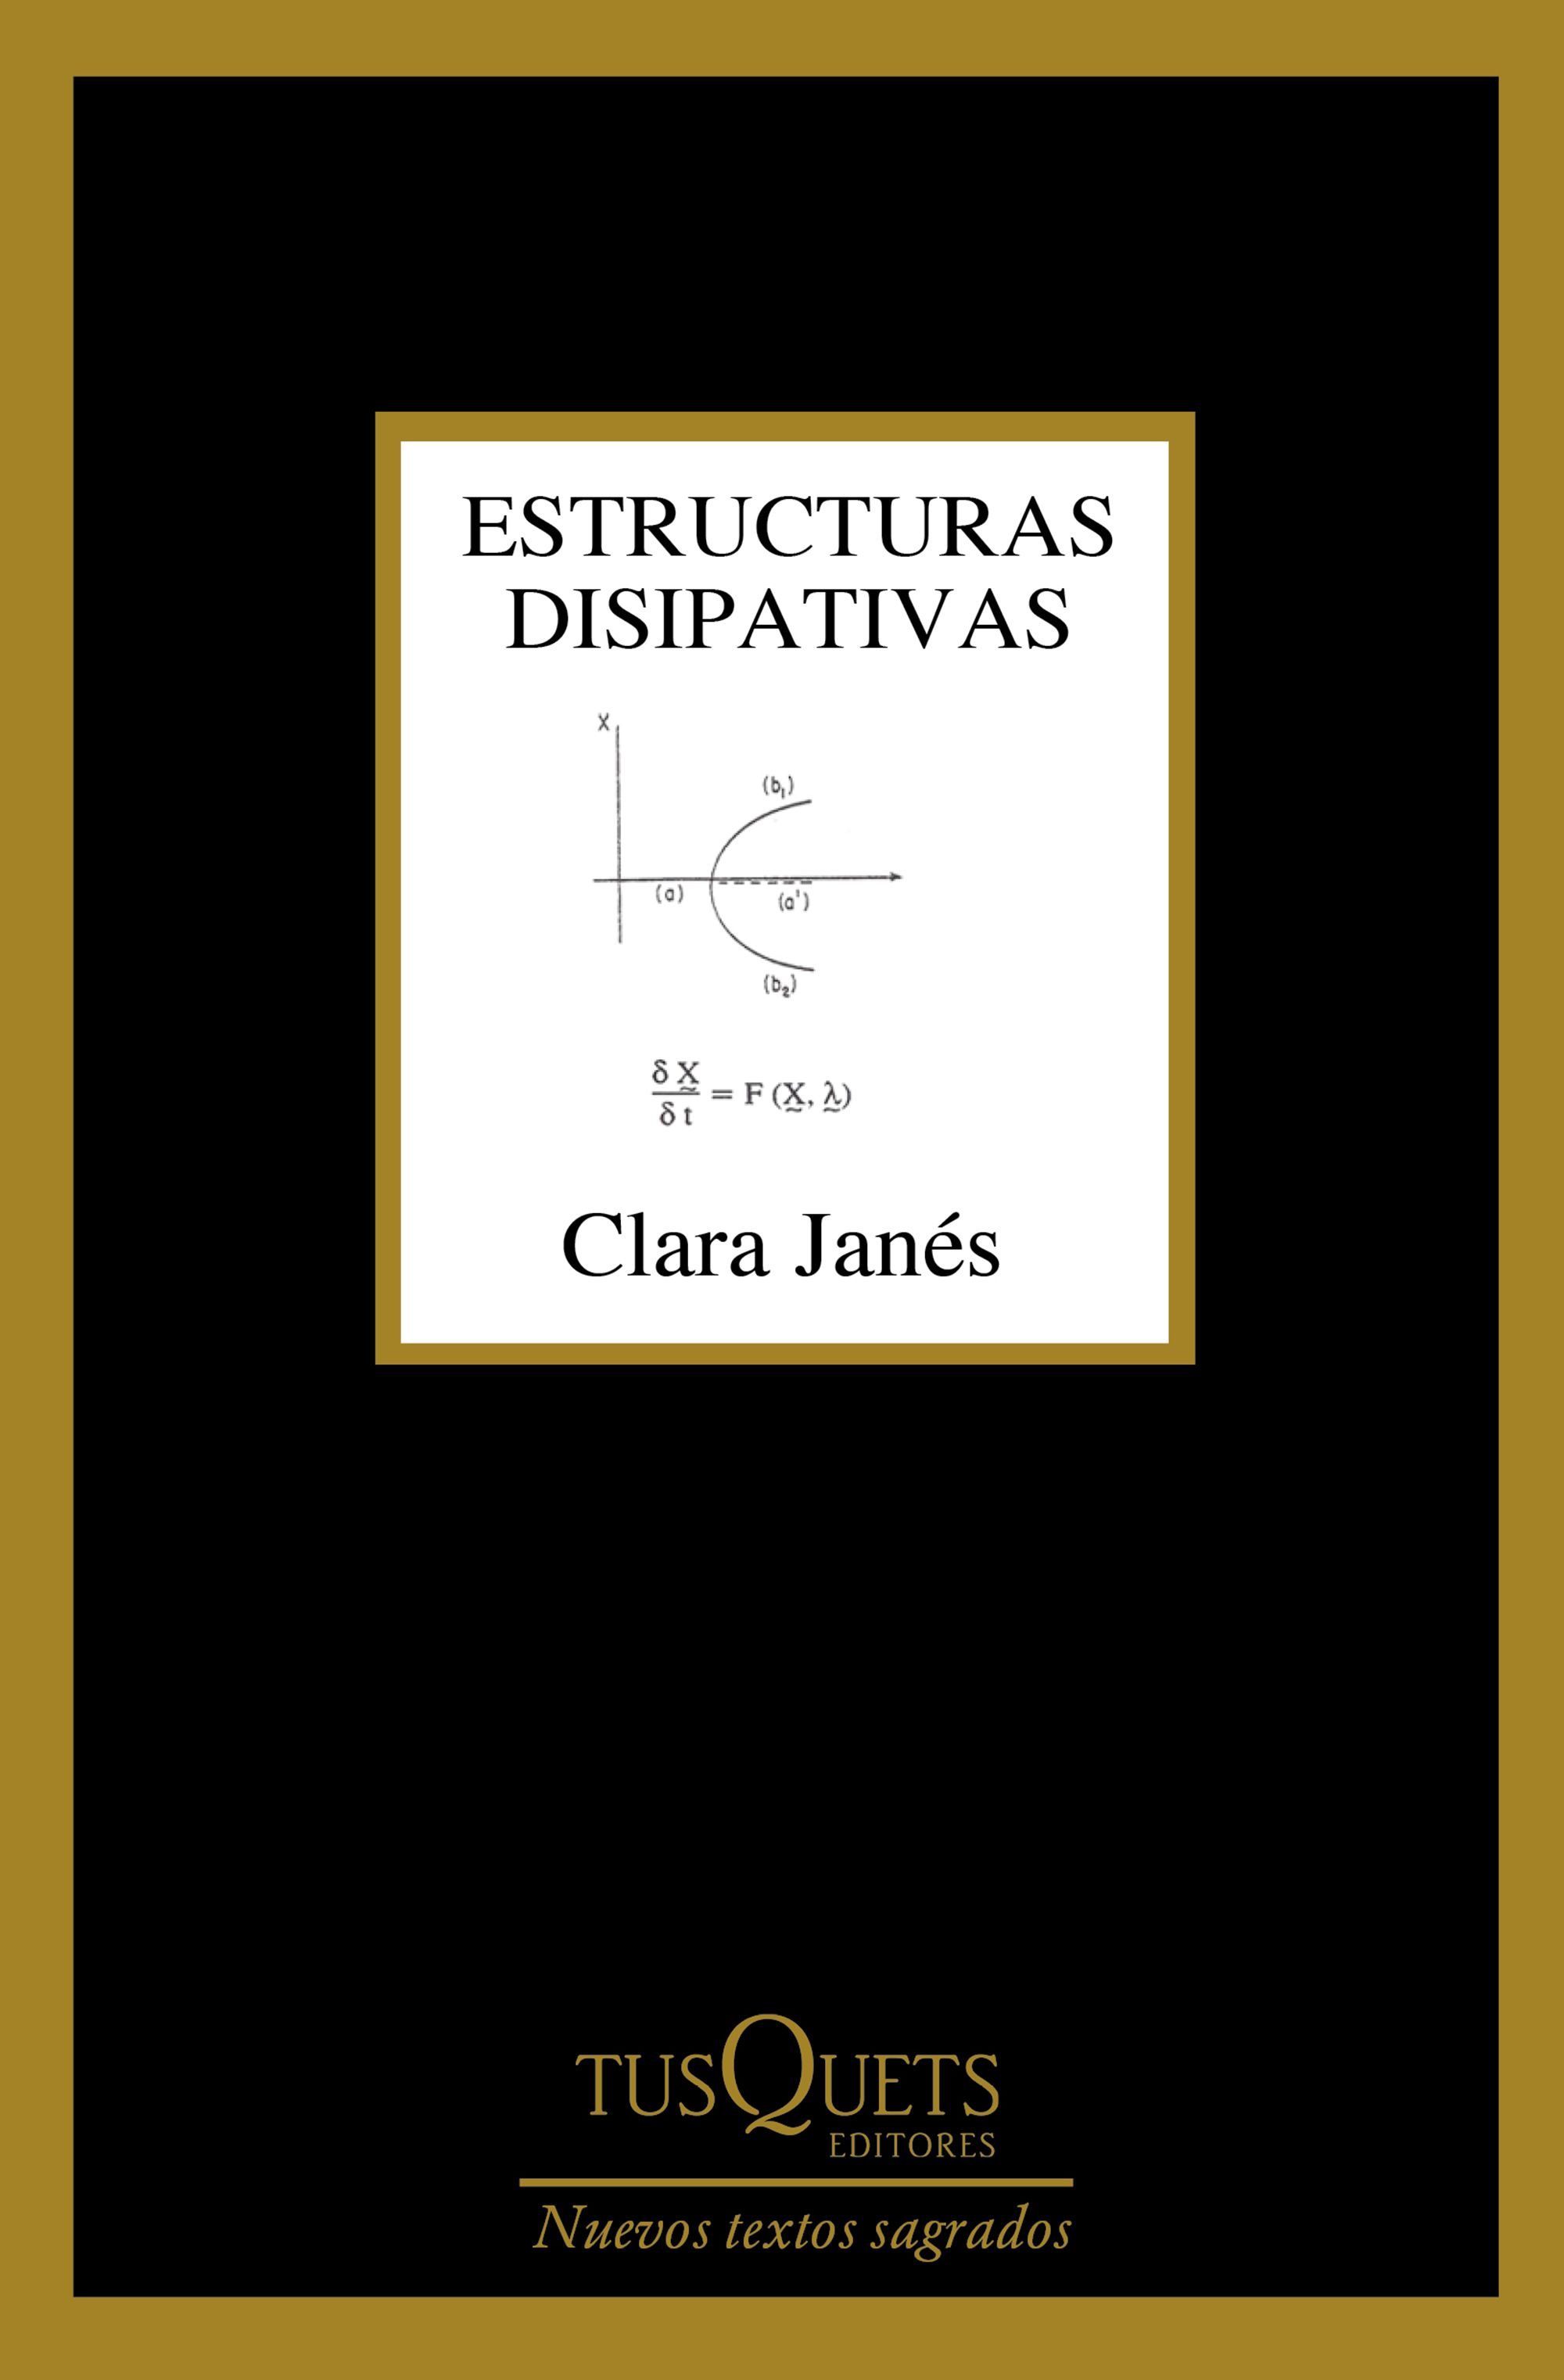 Estructuras disipativas, el nuevo libro de Clara Janés